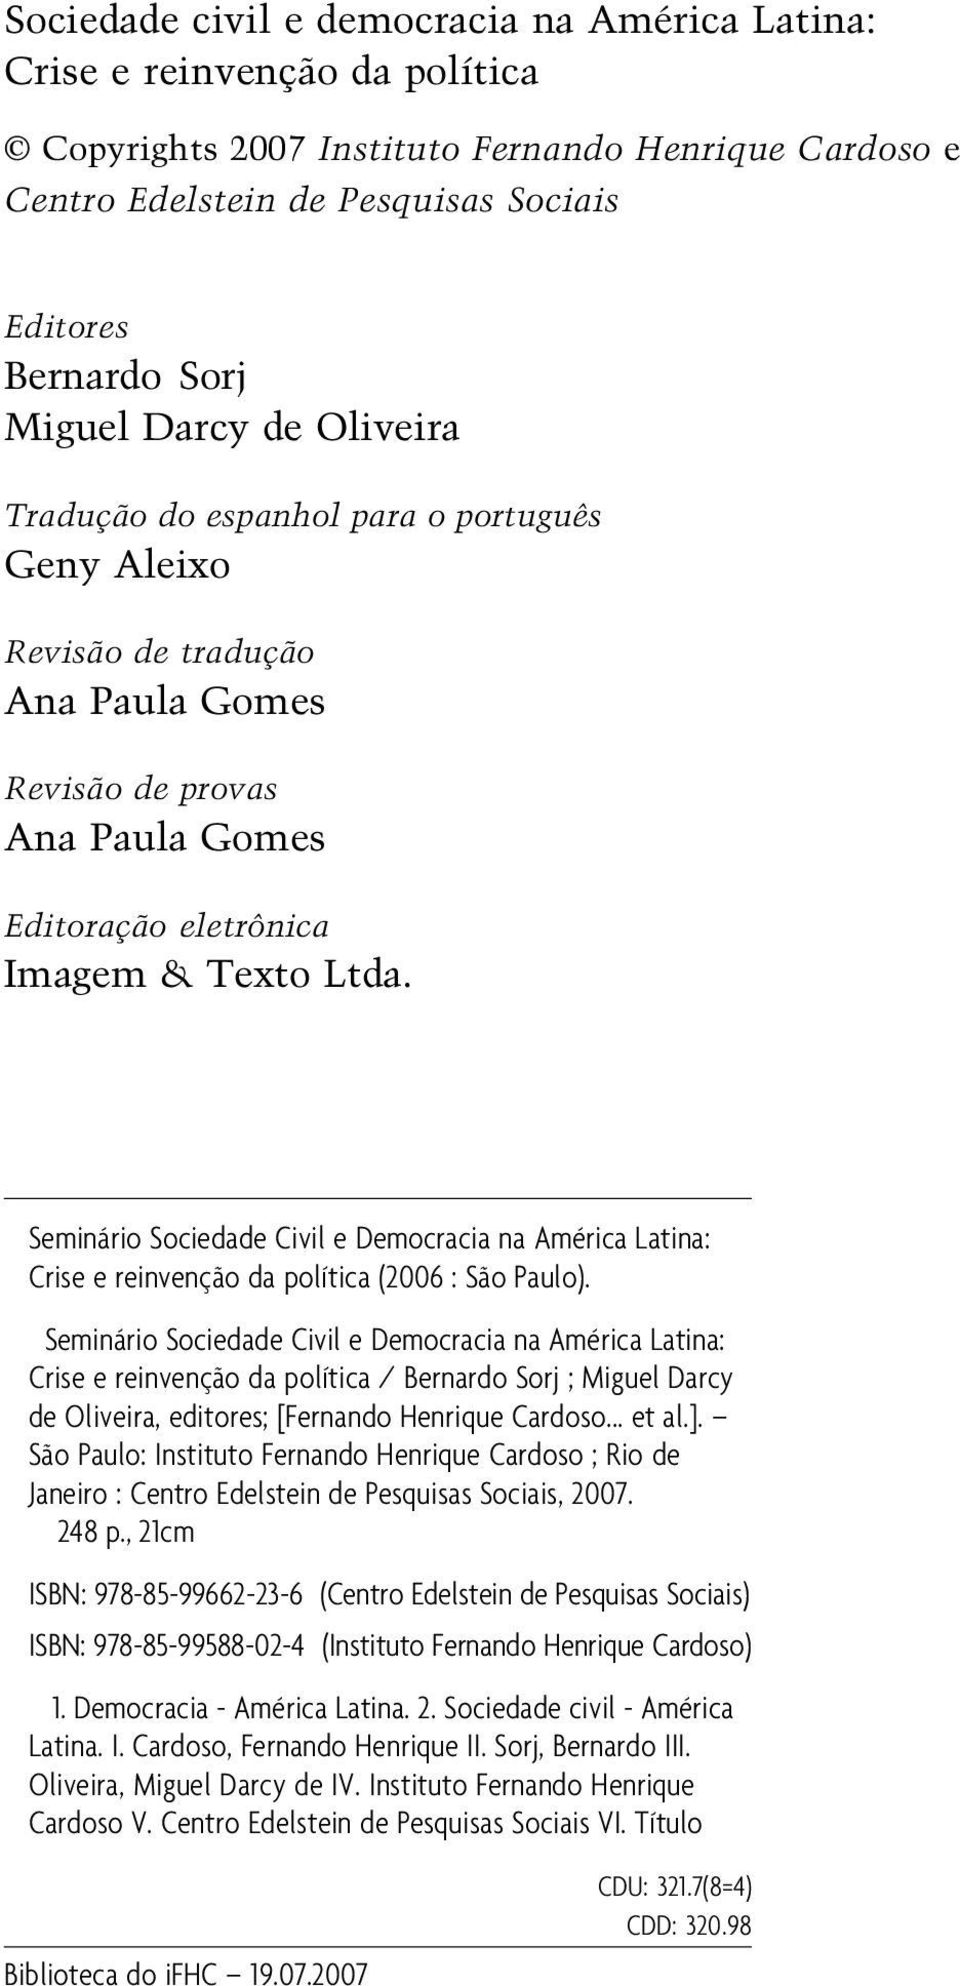 Seminário Sociedade Civil e Democracia na América Latina: Crise e reinvenção da política (2006 : São Paulo).